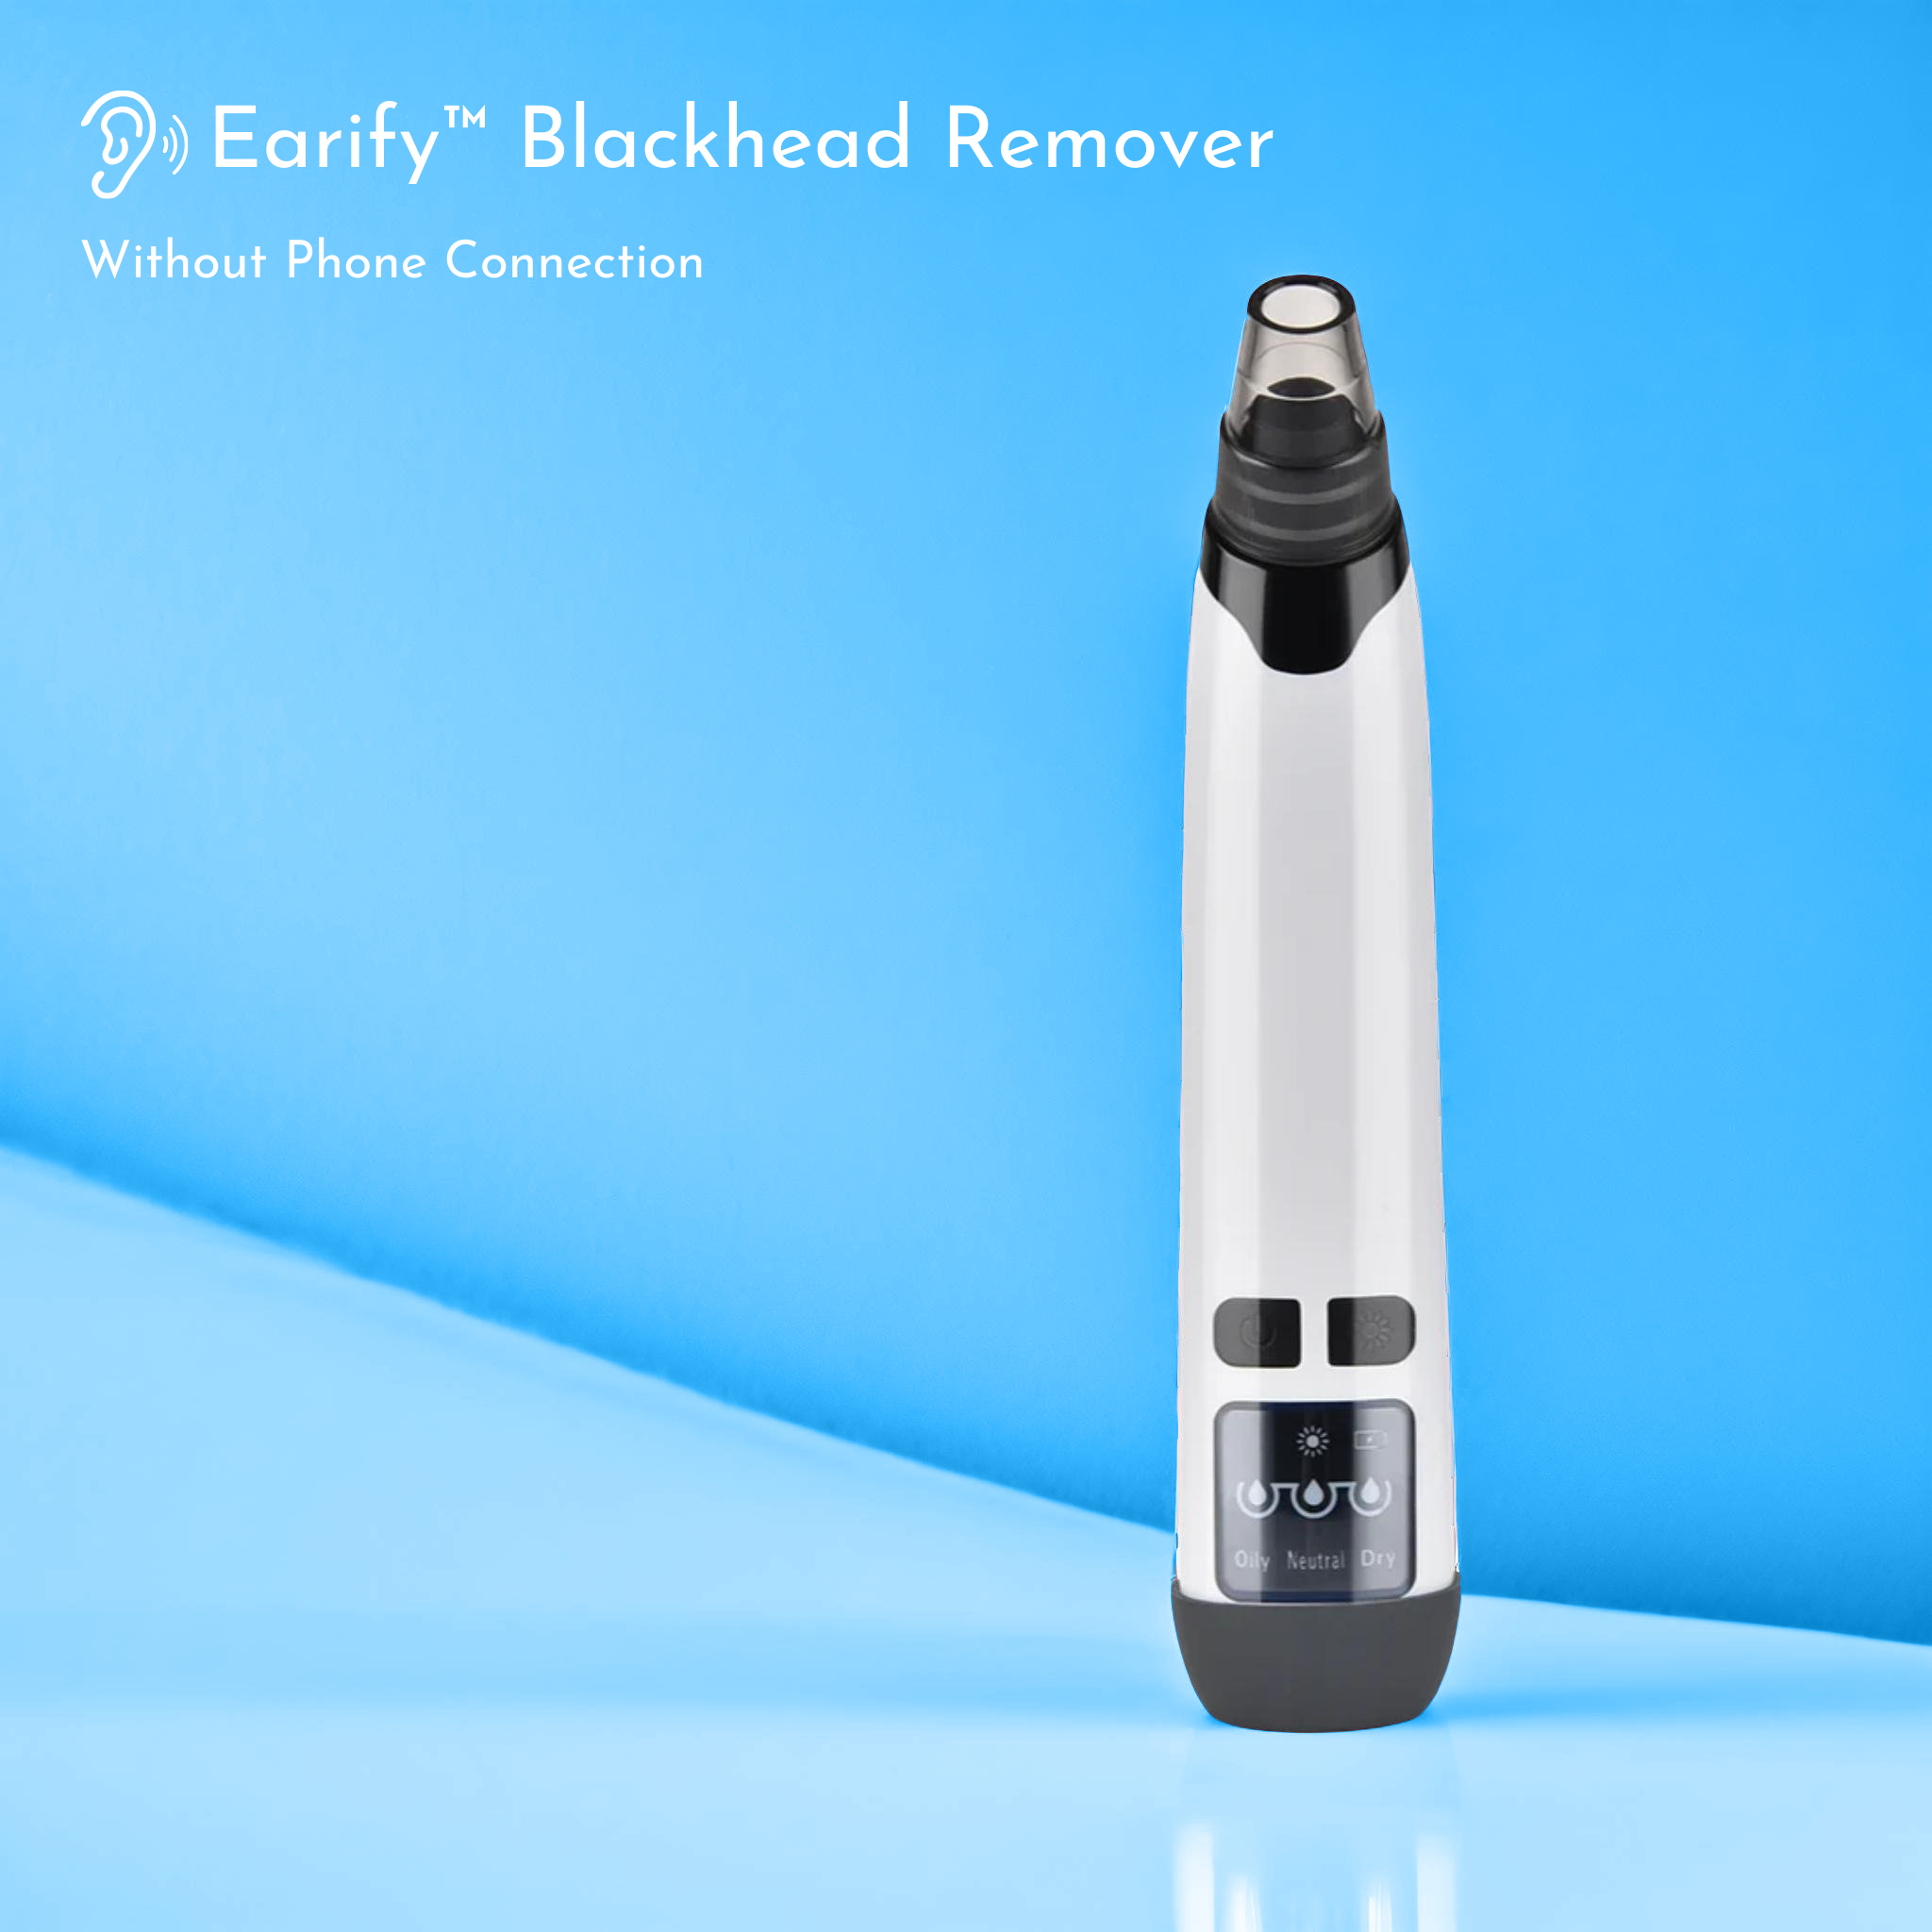 Earify™ Blackhead Remover